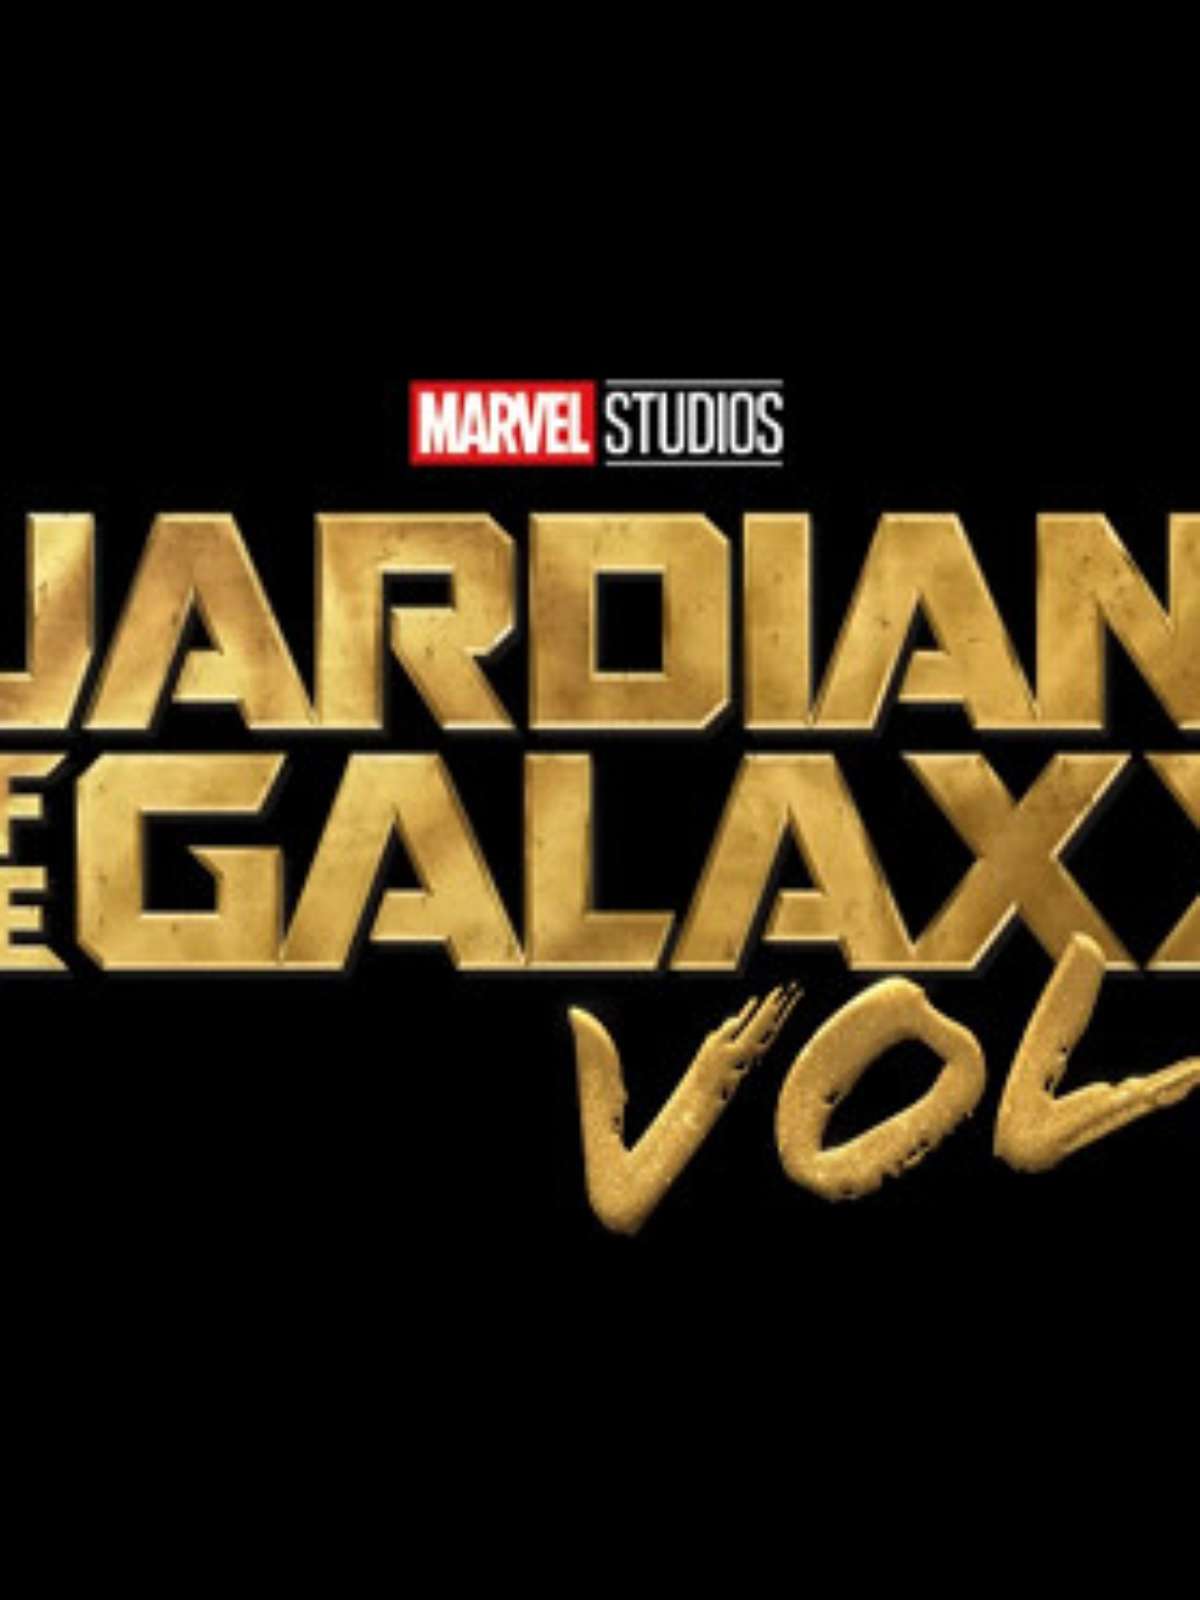 Guardiões da Galáxia Vol. 3 estreia no Disney+